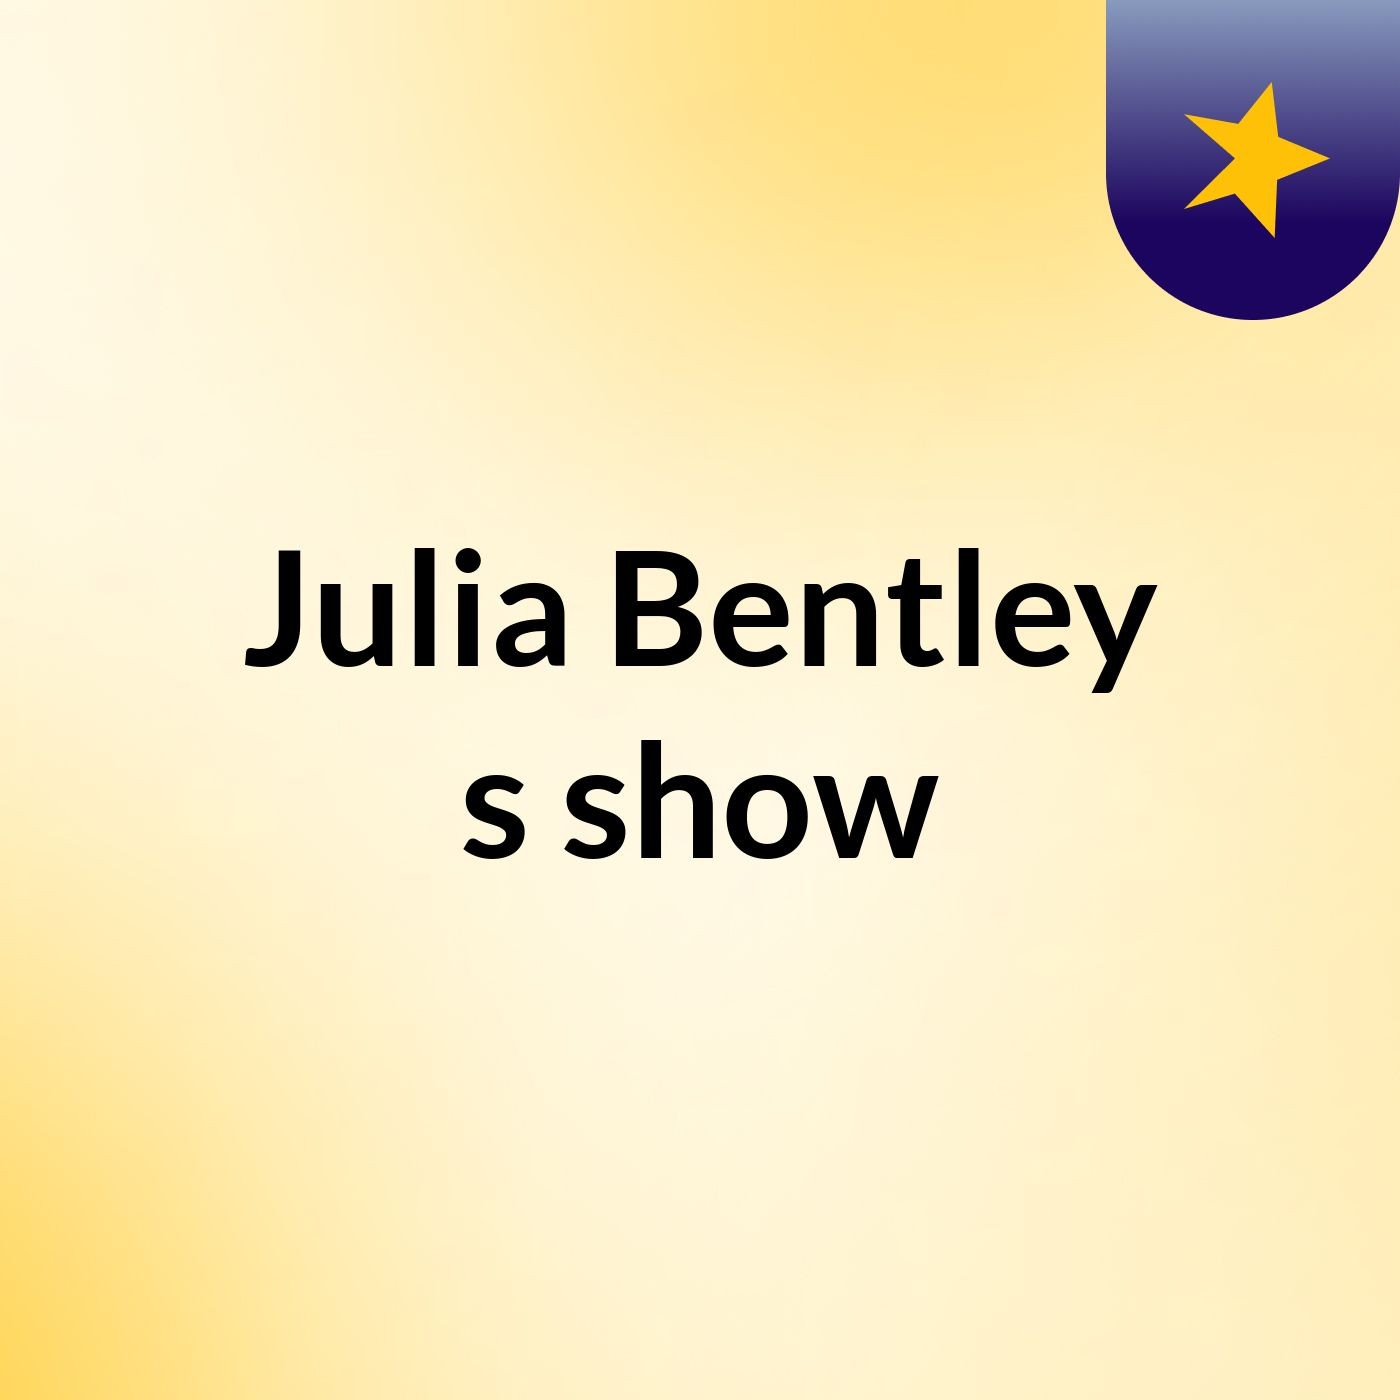 Episode 5 - Julia Bentley's show